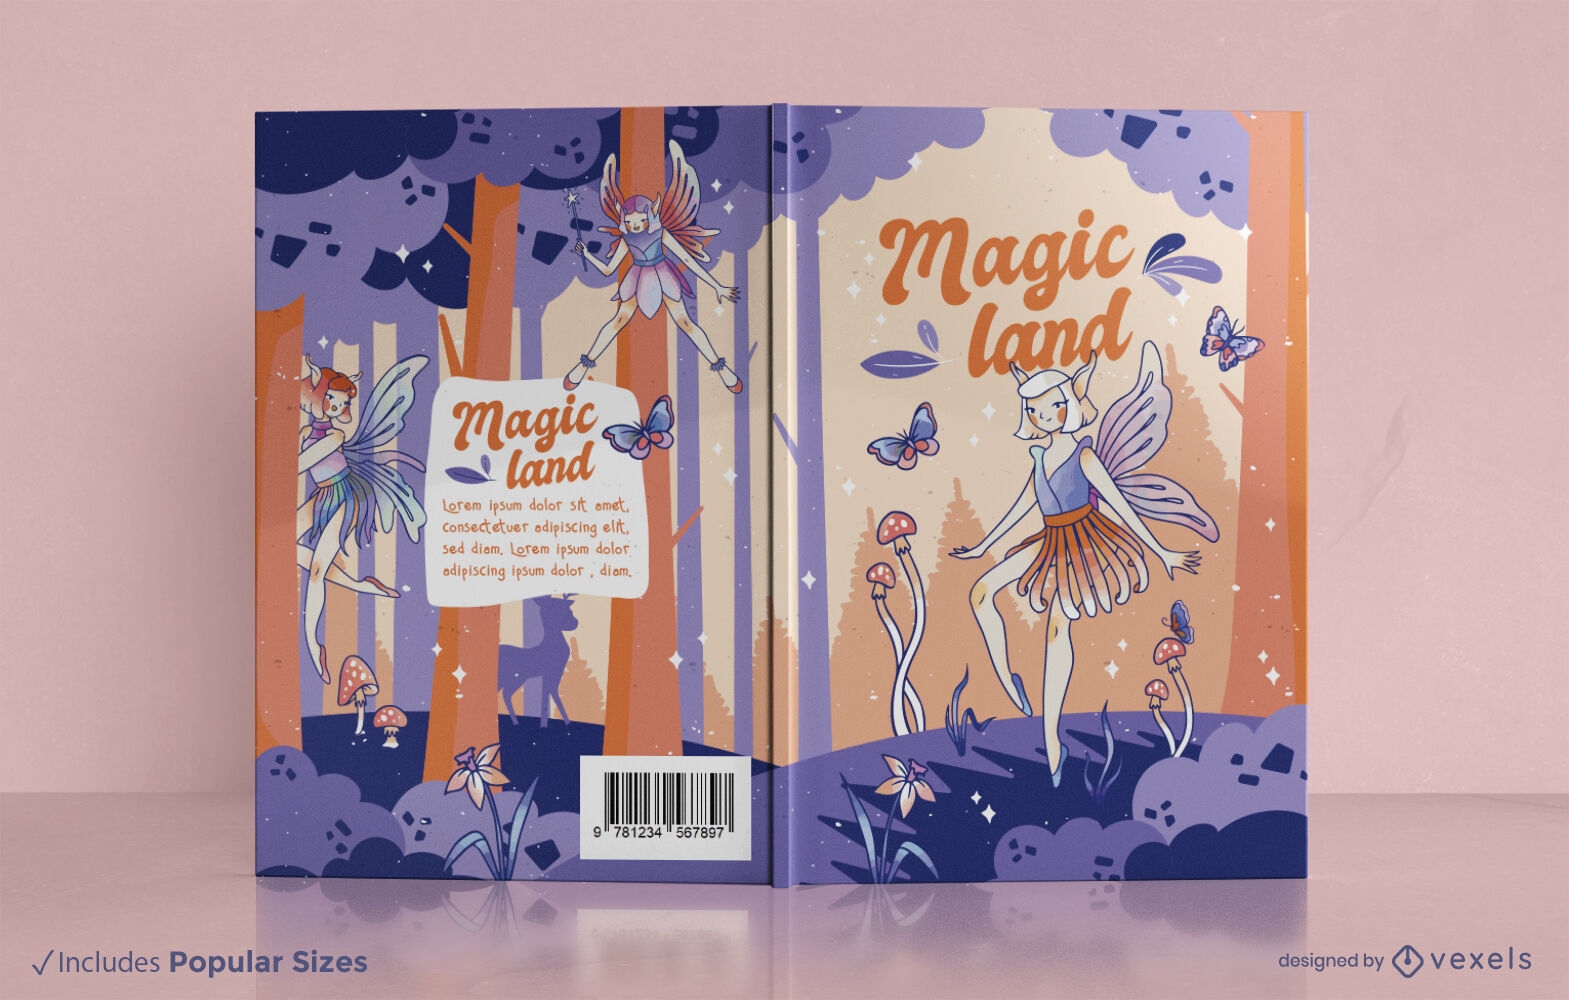 Fairy magic land book cover design